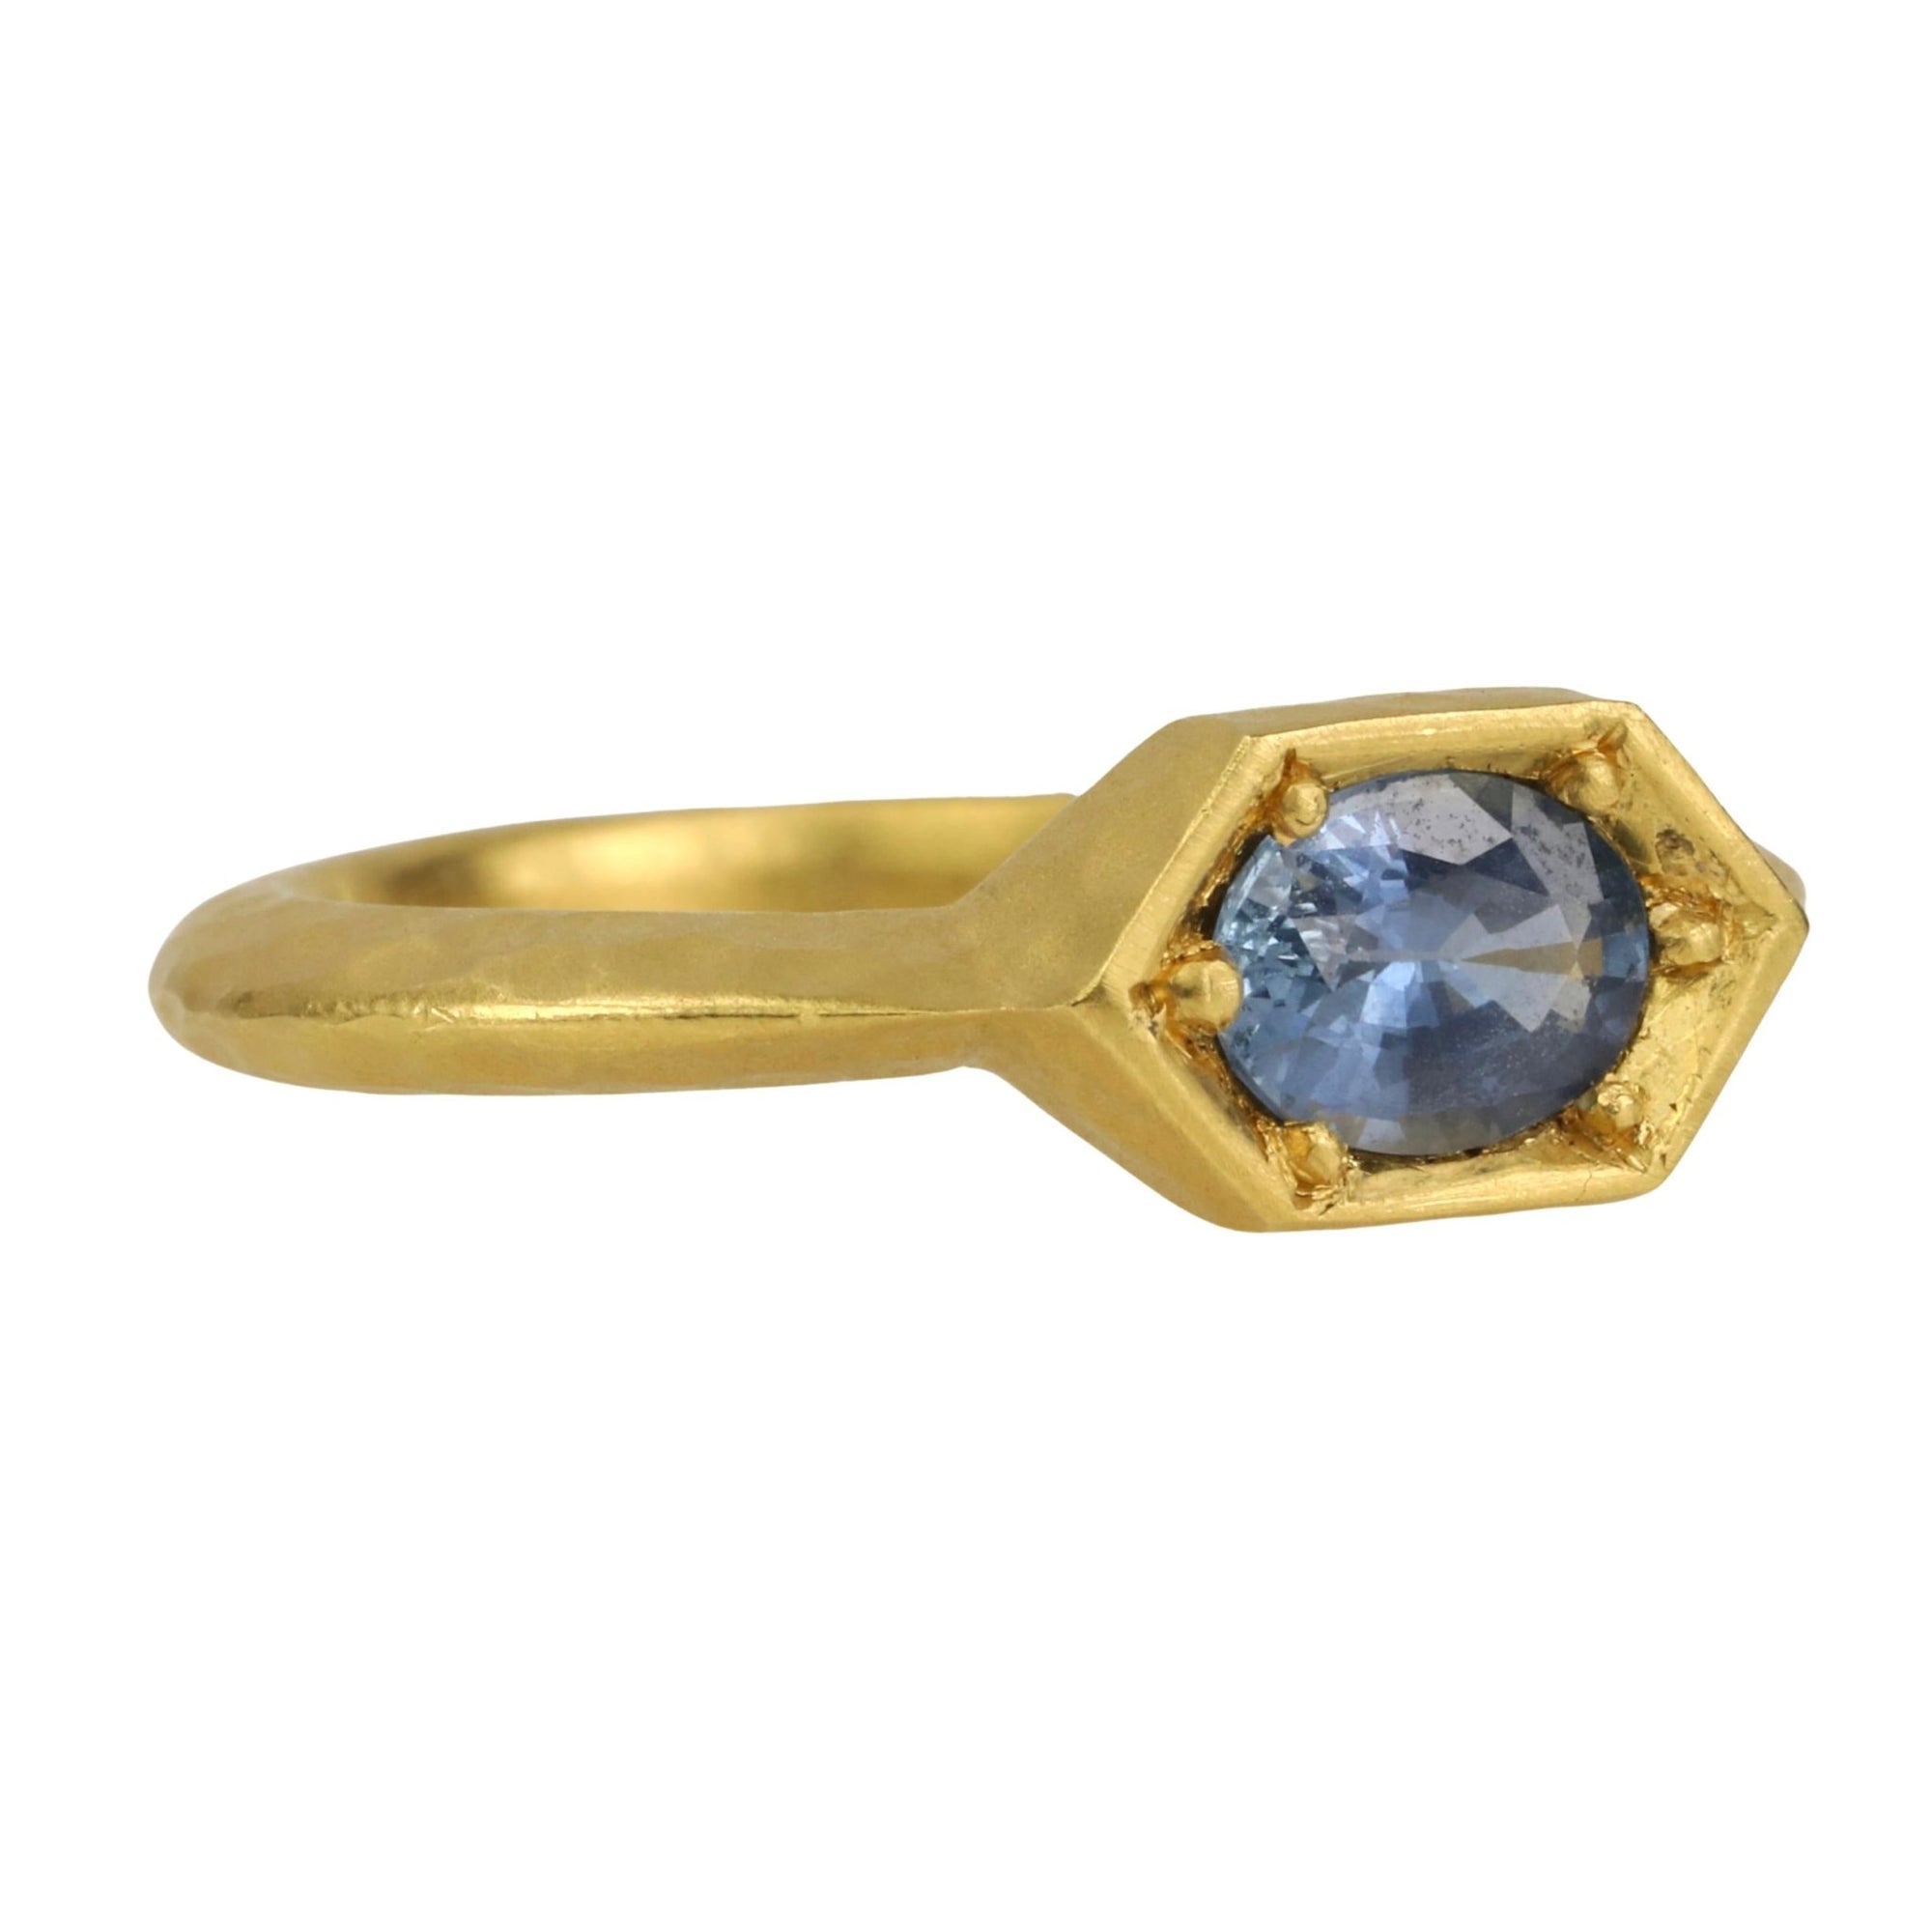 22K Gold Hexagonal Prong-Set Oval Blue Sapphire Ring